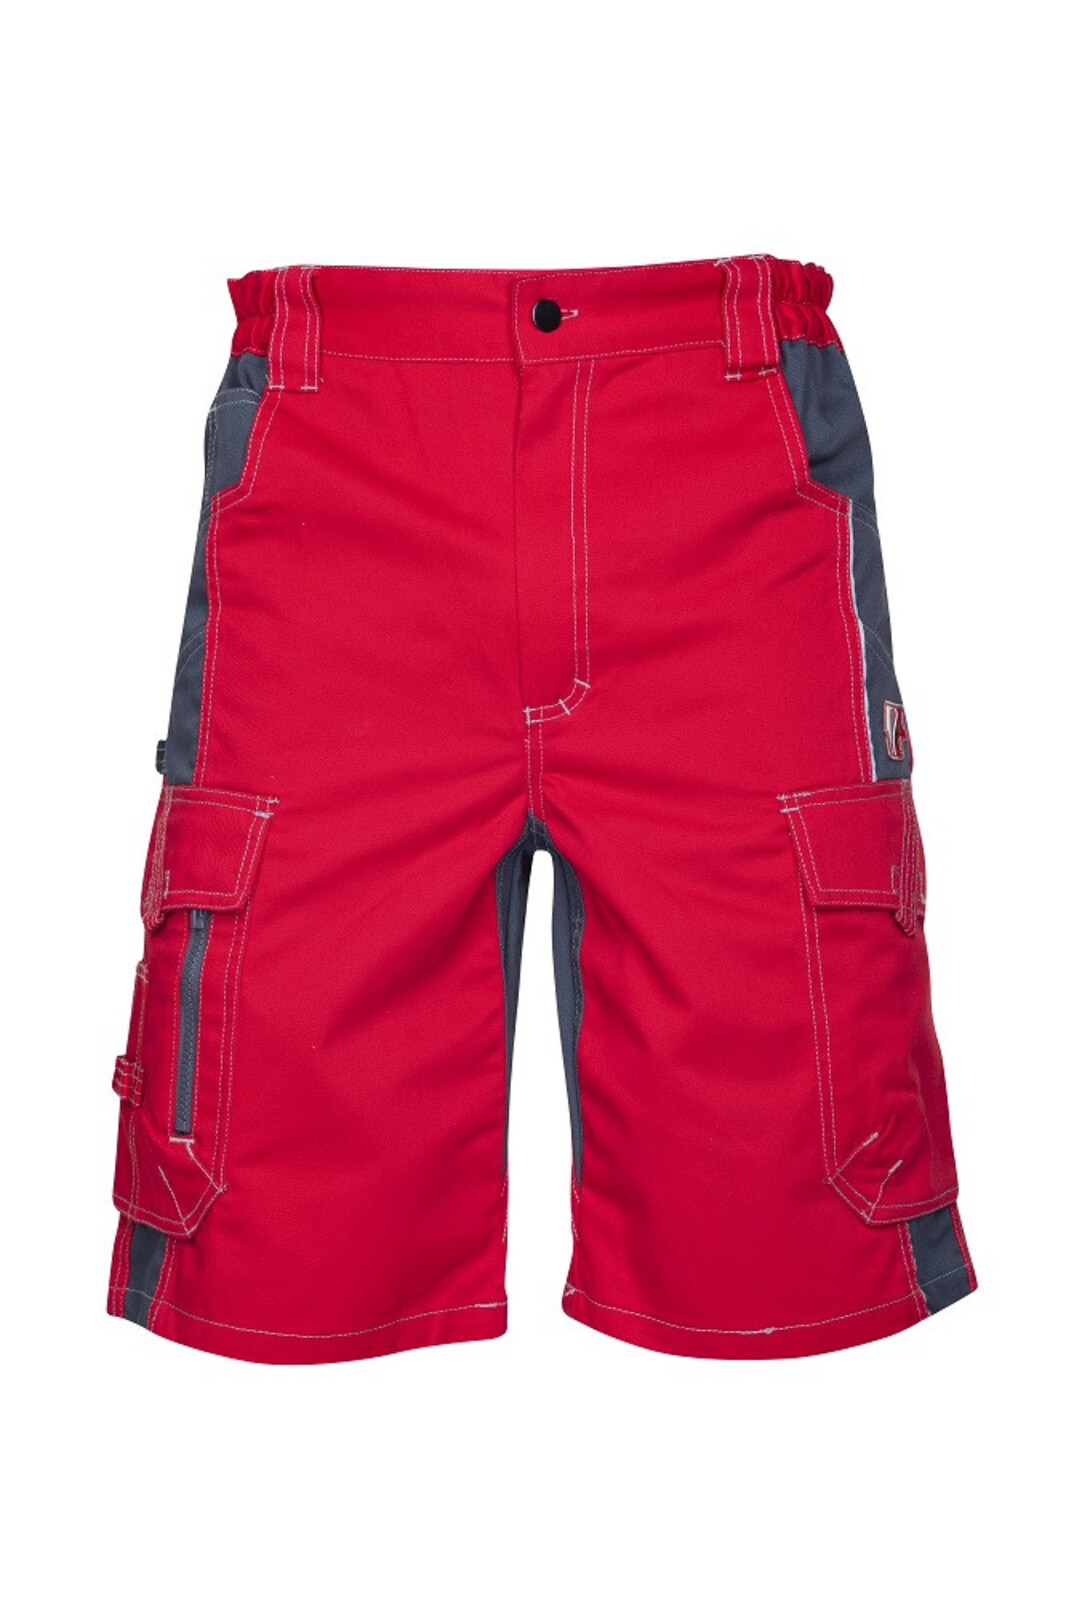 Pánske montérkové šortky Ardon Vision - veľkosť: 54, farba: červená/sivá